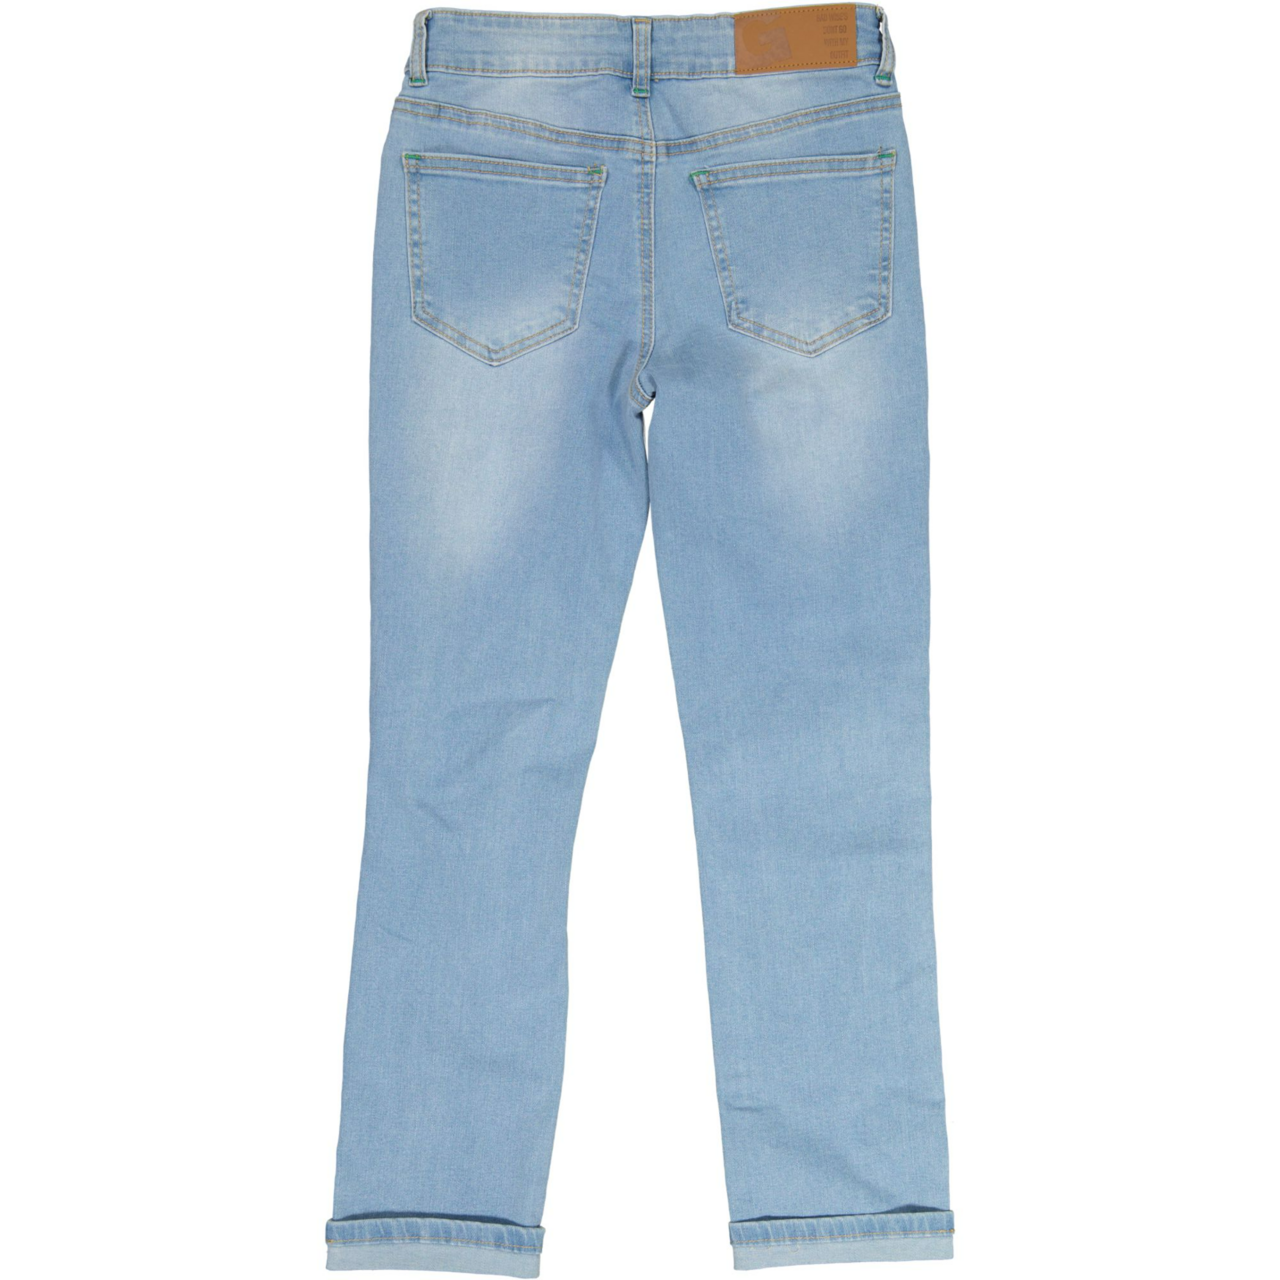 Unisex loose fit jeans Denim blue wash 86/92